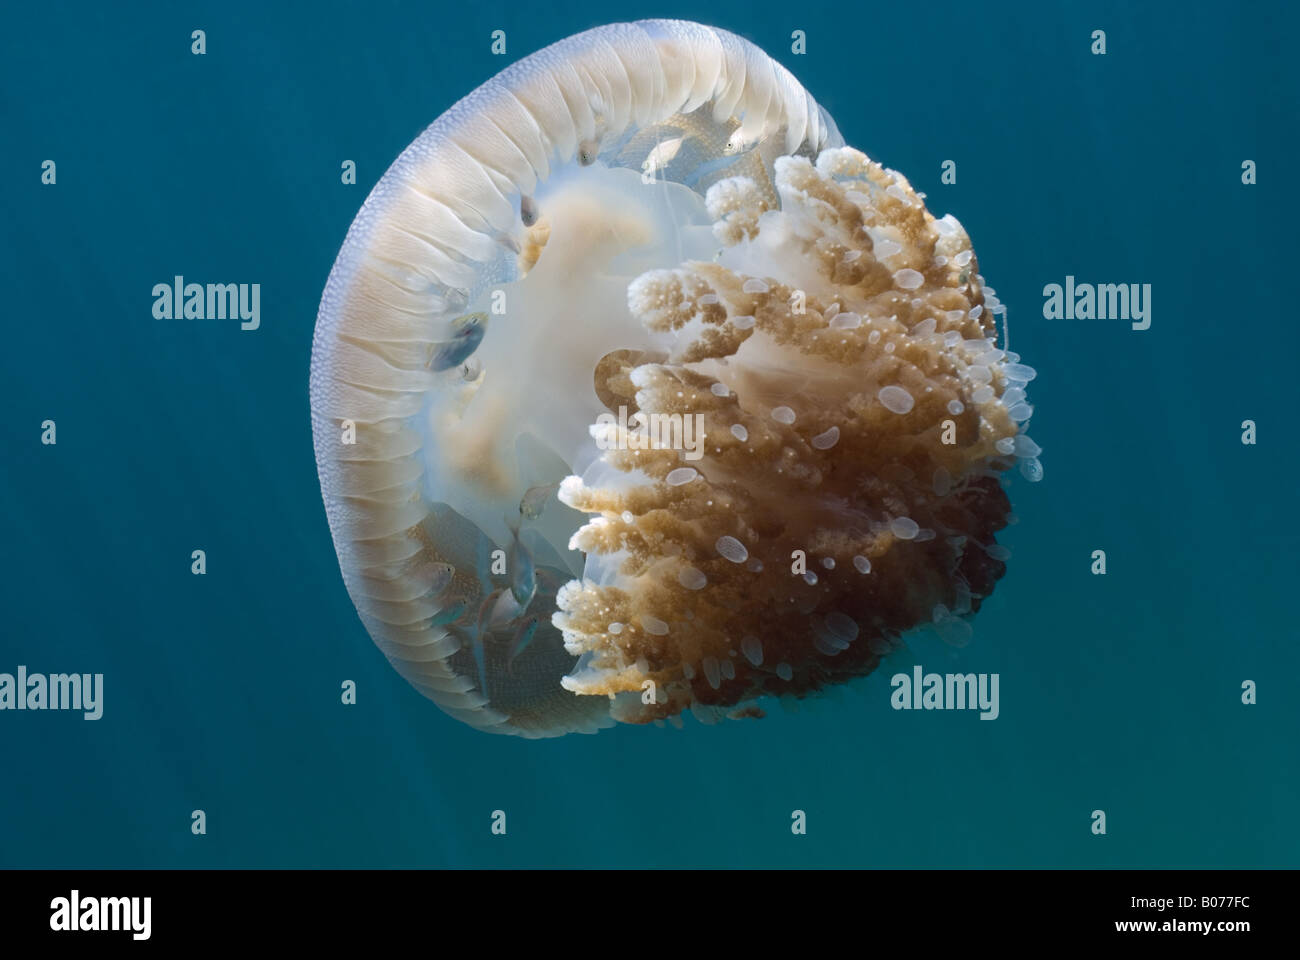 Jellyfish under water Stock Photo